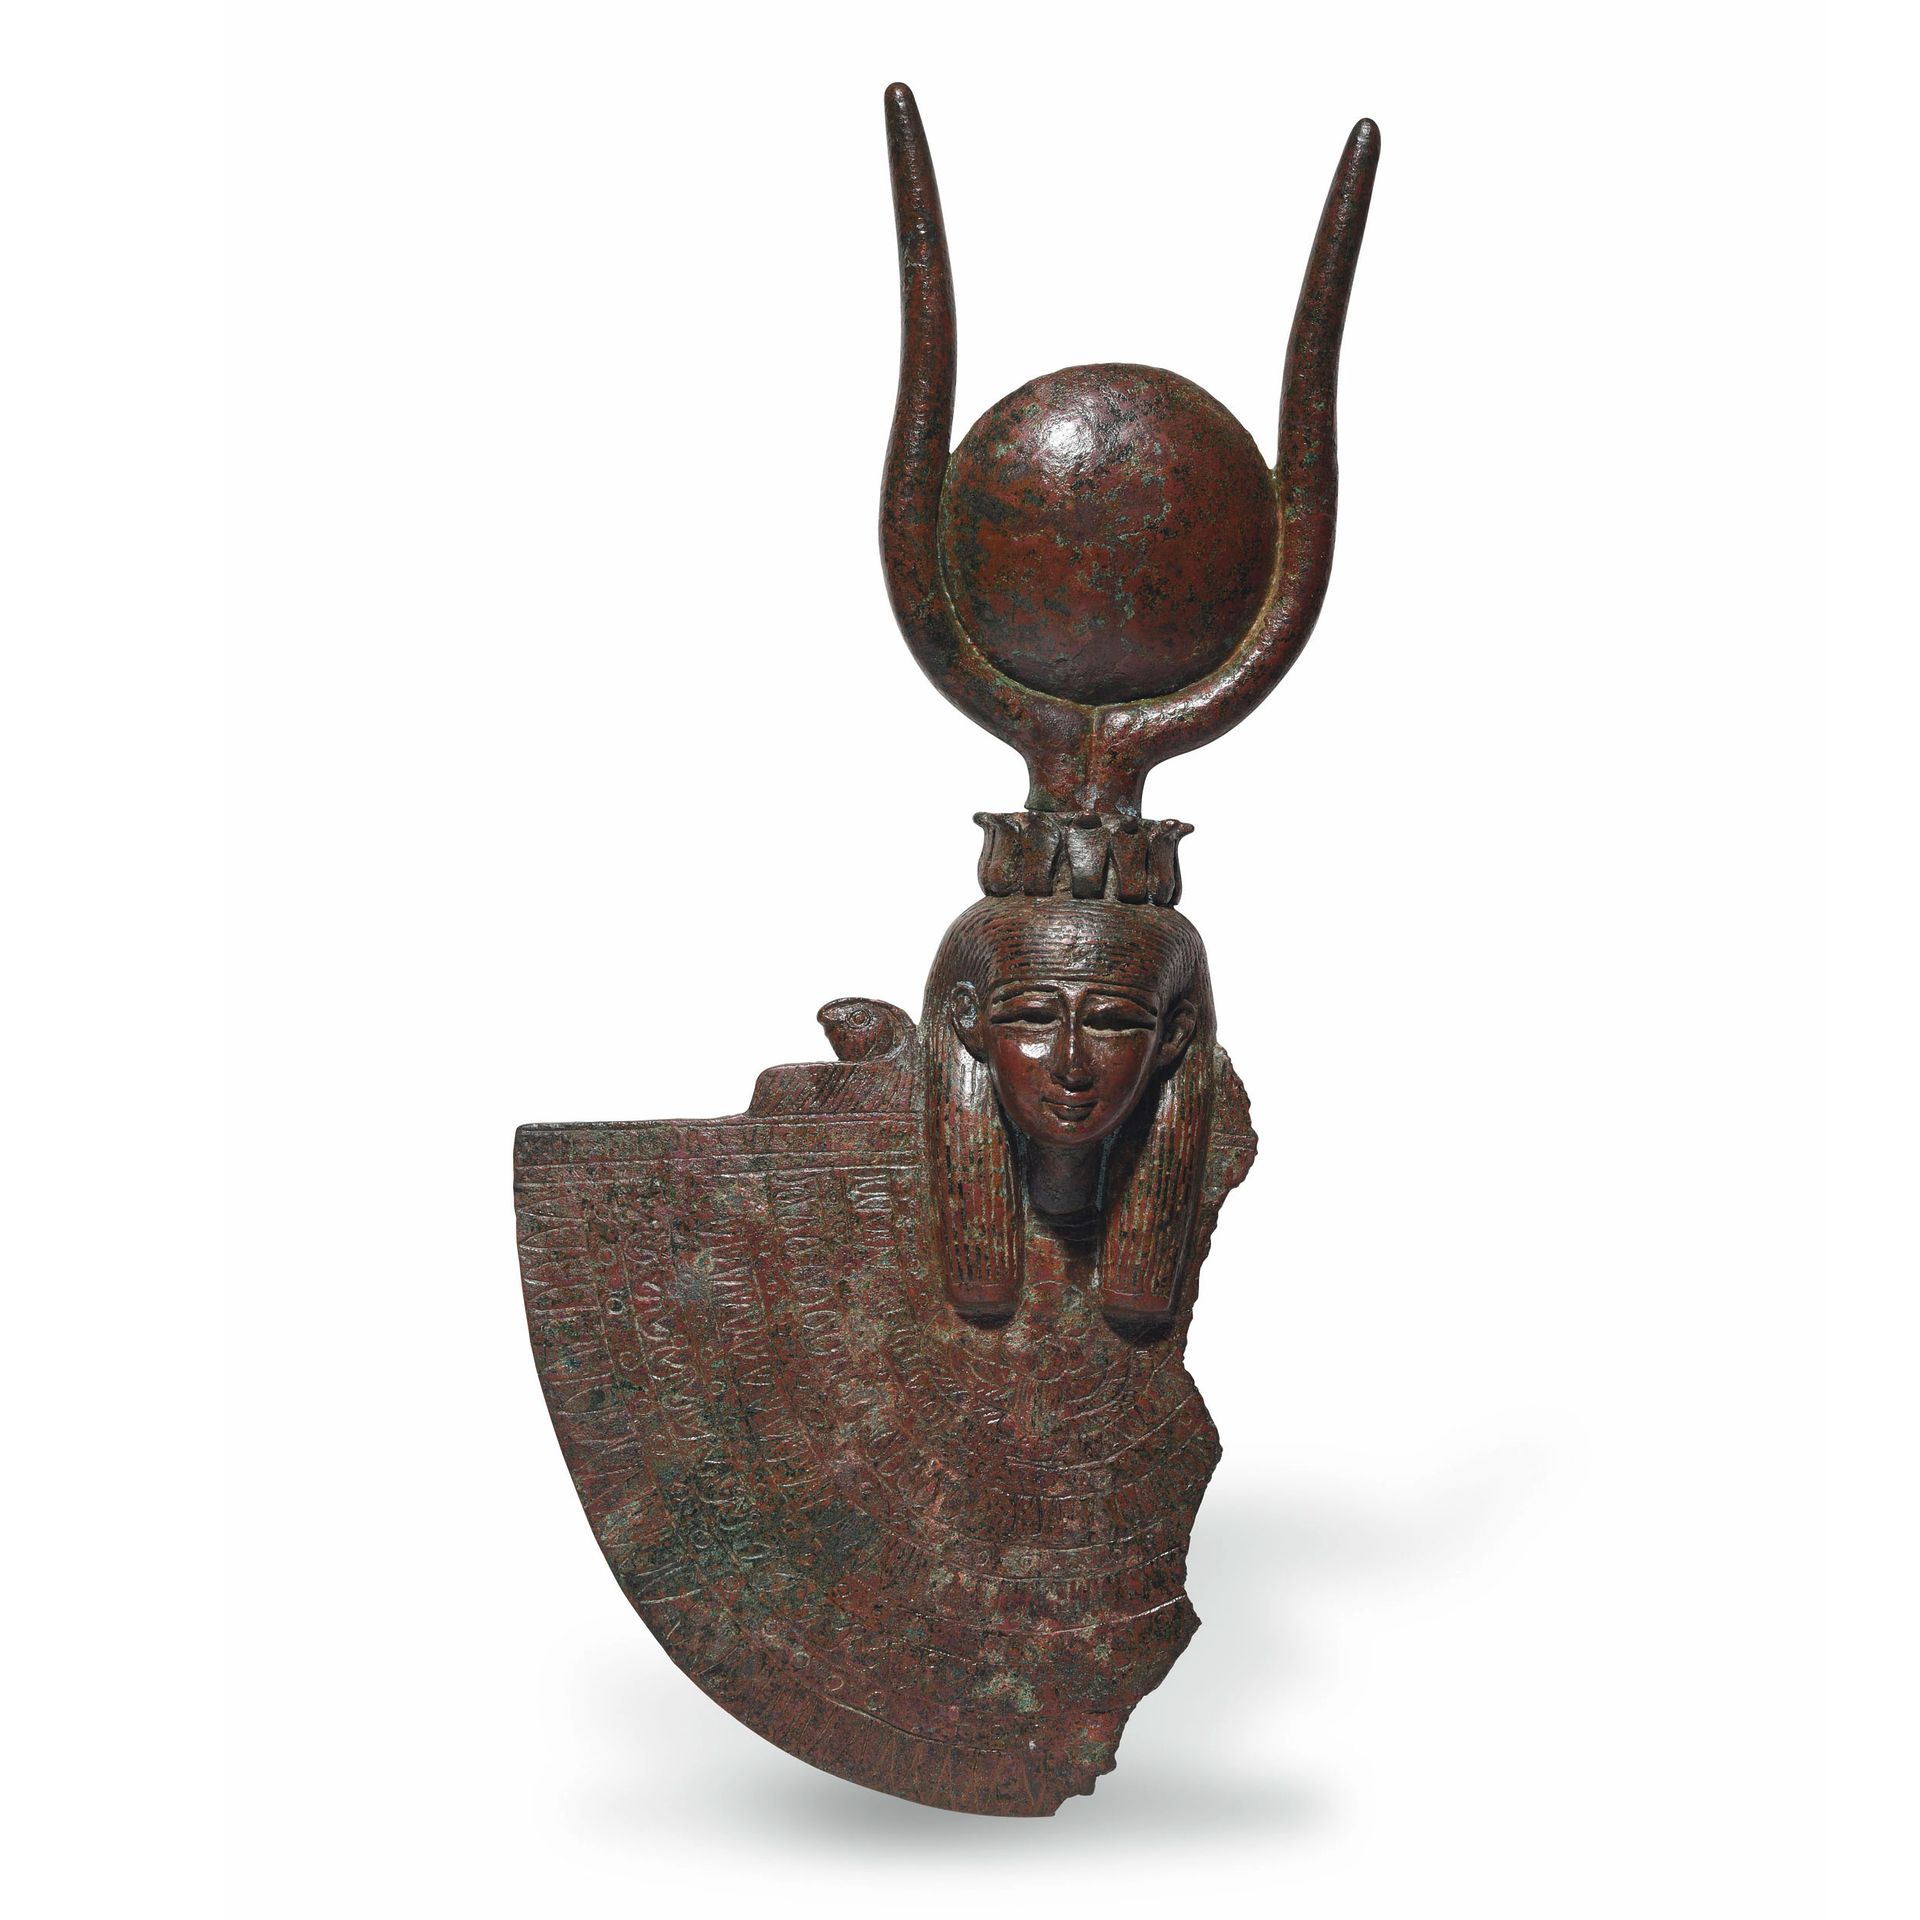 Null 伊斯兰-哈托尔的重要支持

埃及，晚期，公元前664-332年

带有绿色和红色铜锈的青铜器

H.29厘米



出处

原雅克-让-克莱尔收藏（1&hellip;